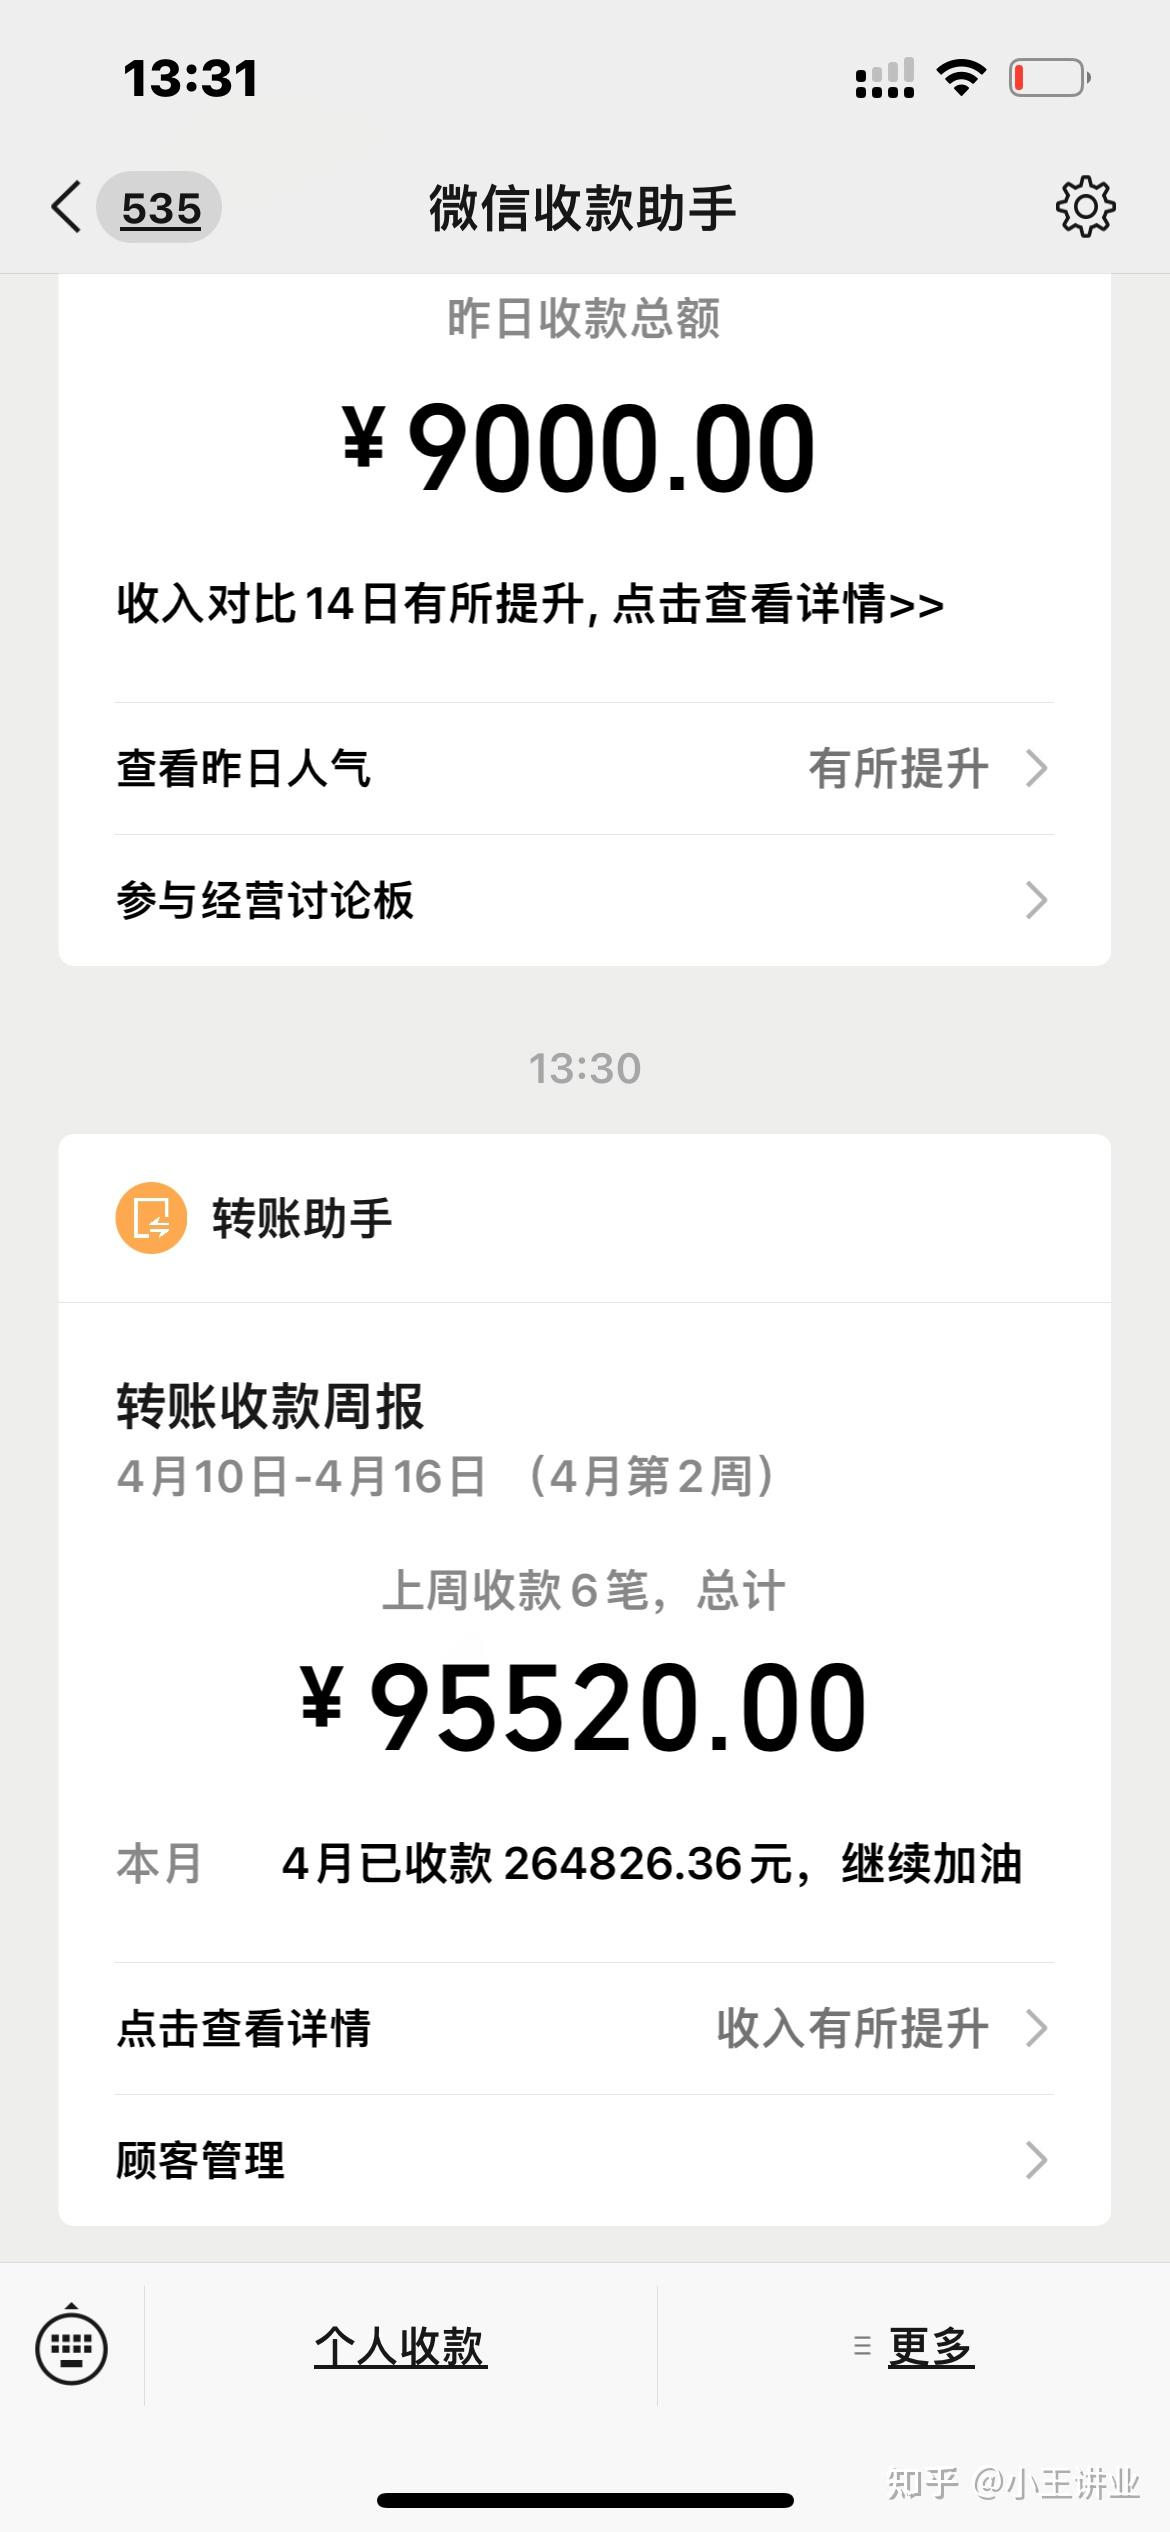 人在深圳创业，创业补贴10万元助力开公司-搜狐大视野-搜狐新闻